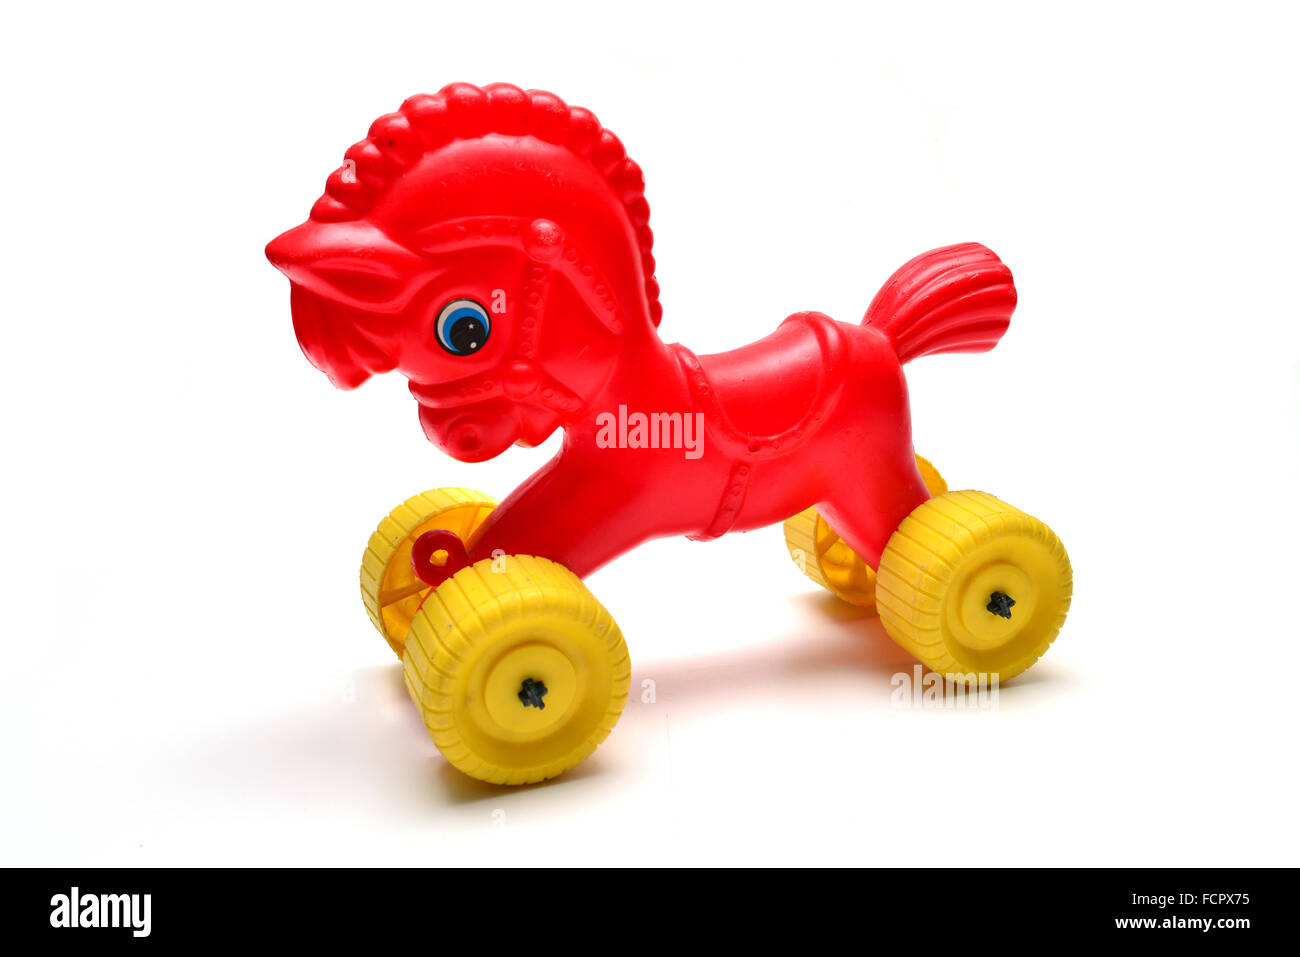 Cavallo rosso era comunista giocattolo retrò su sfondo bianco Foto Stock